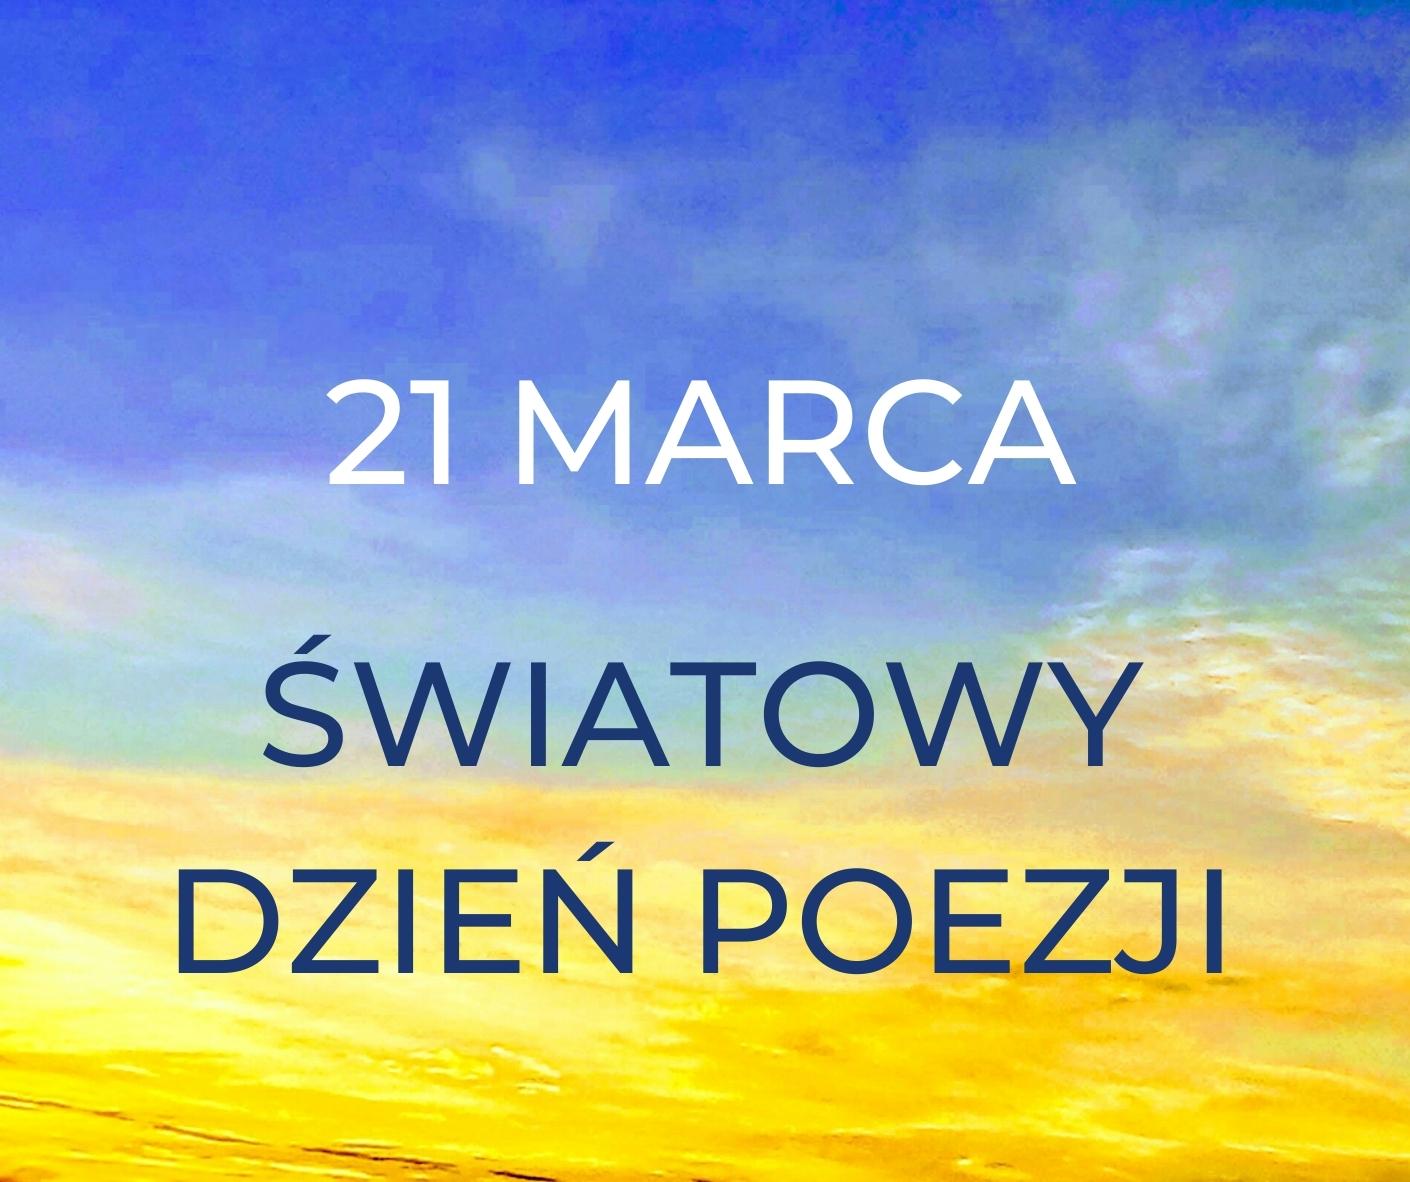 21 Marca Światowy Dzień Poezji – wystawa książek ze zbiorów Filii PBW w Przeworsku - niebiesko żółty slajd tytułowy